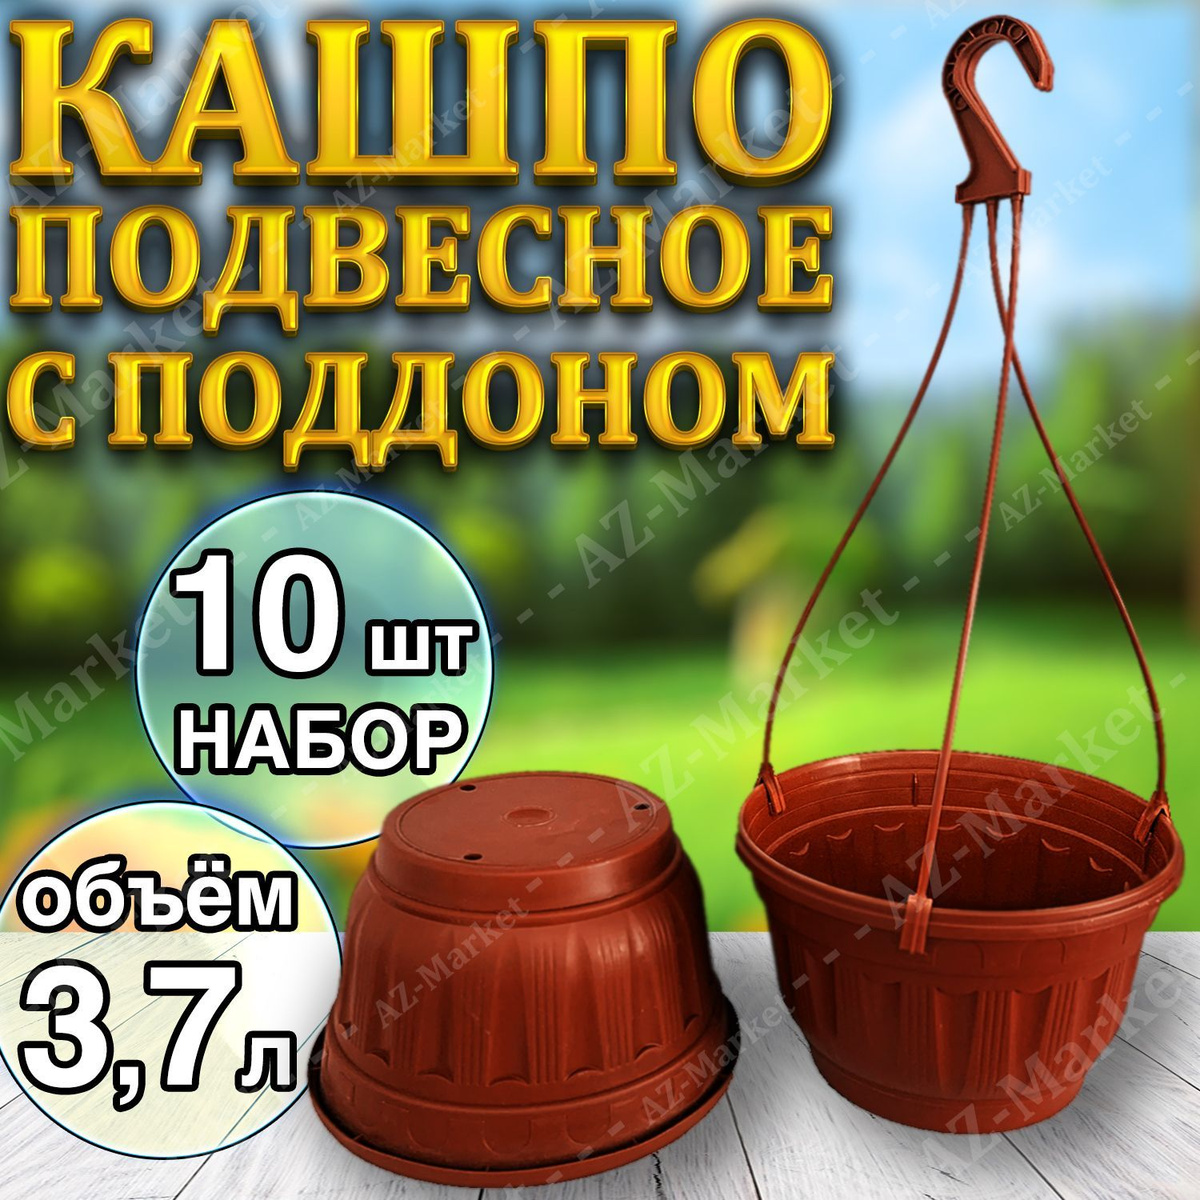 Кашпо подвесное с поддоном 3,7л уличное для цветов и растений, садовый набор 10шт Терракотовый (коричневый)